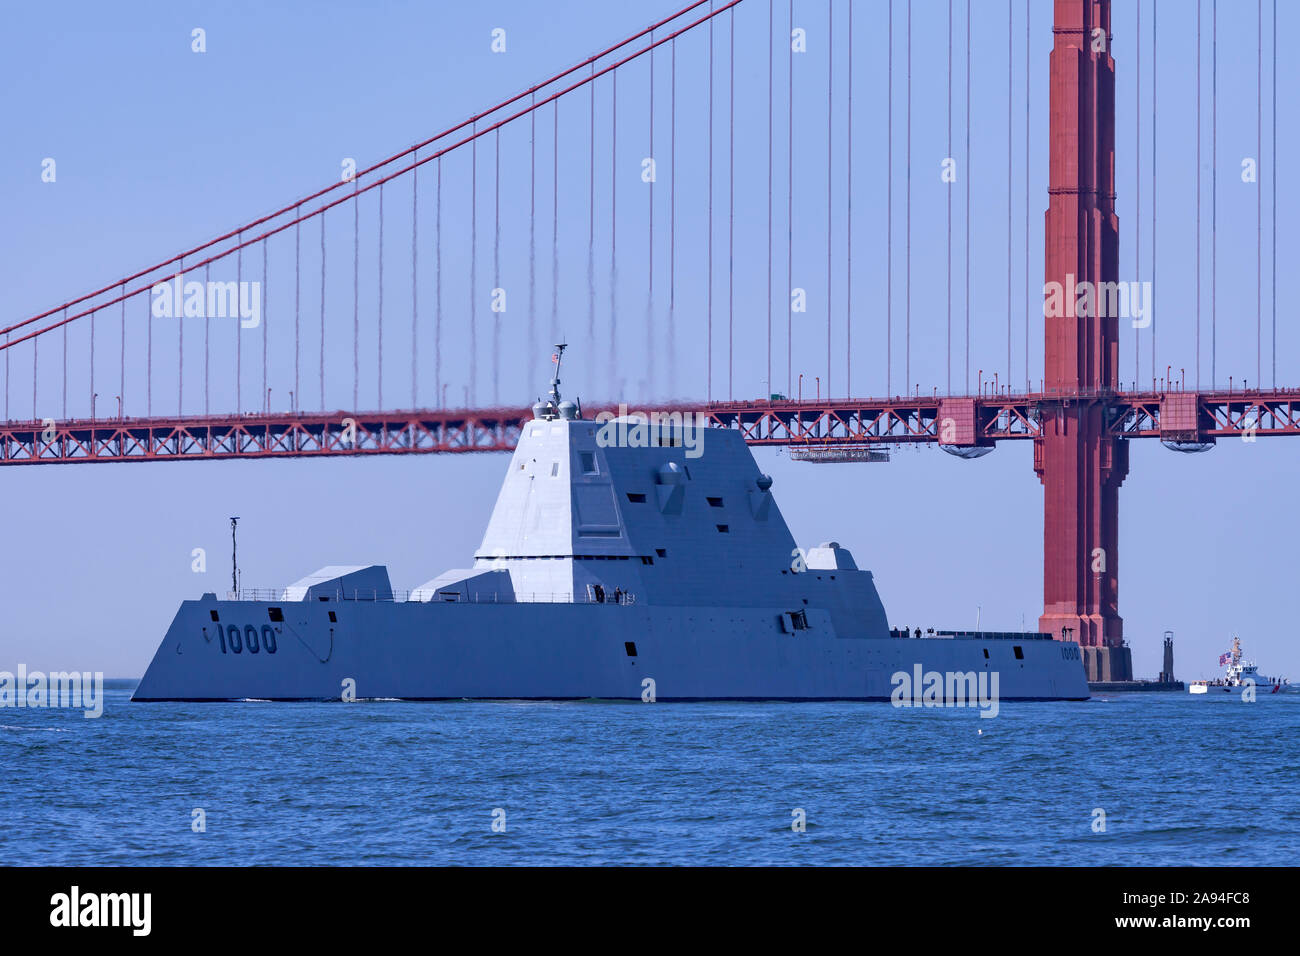 L'United States Navy destroyer lance-missiles USS Zumwalt (DDG-1000) entre dans la baie de San Francisco au cours de la semaine de San Francisco 2019 Défilé de shi Banque D'Images